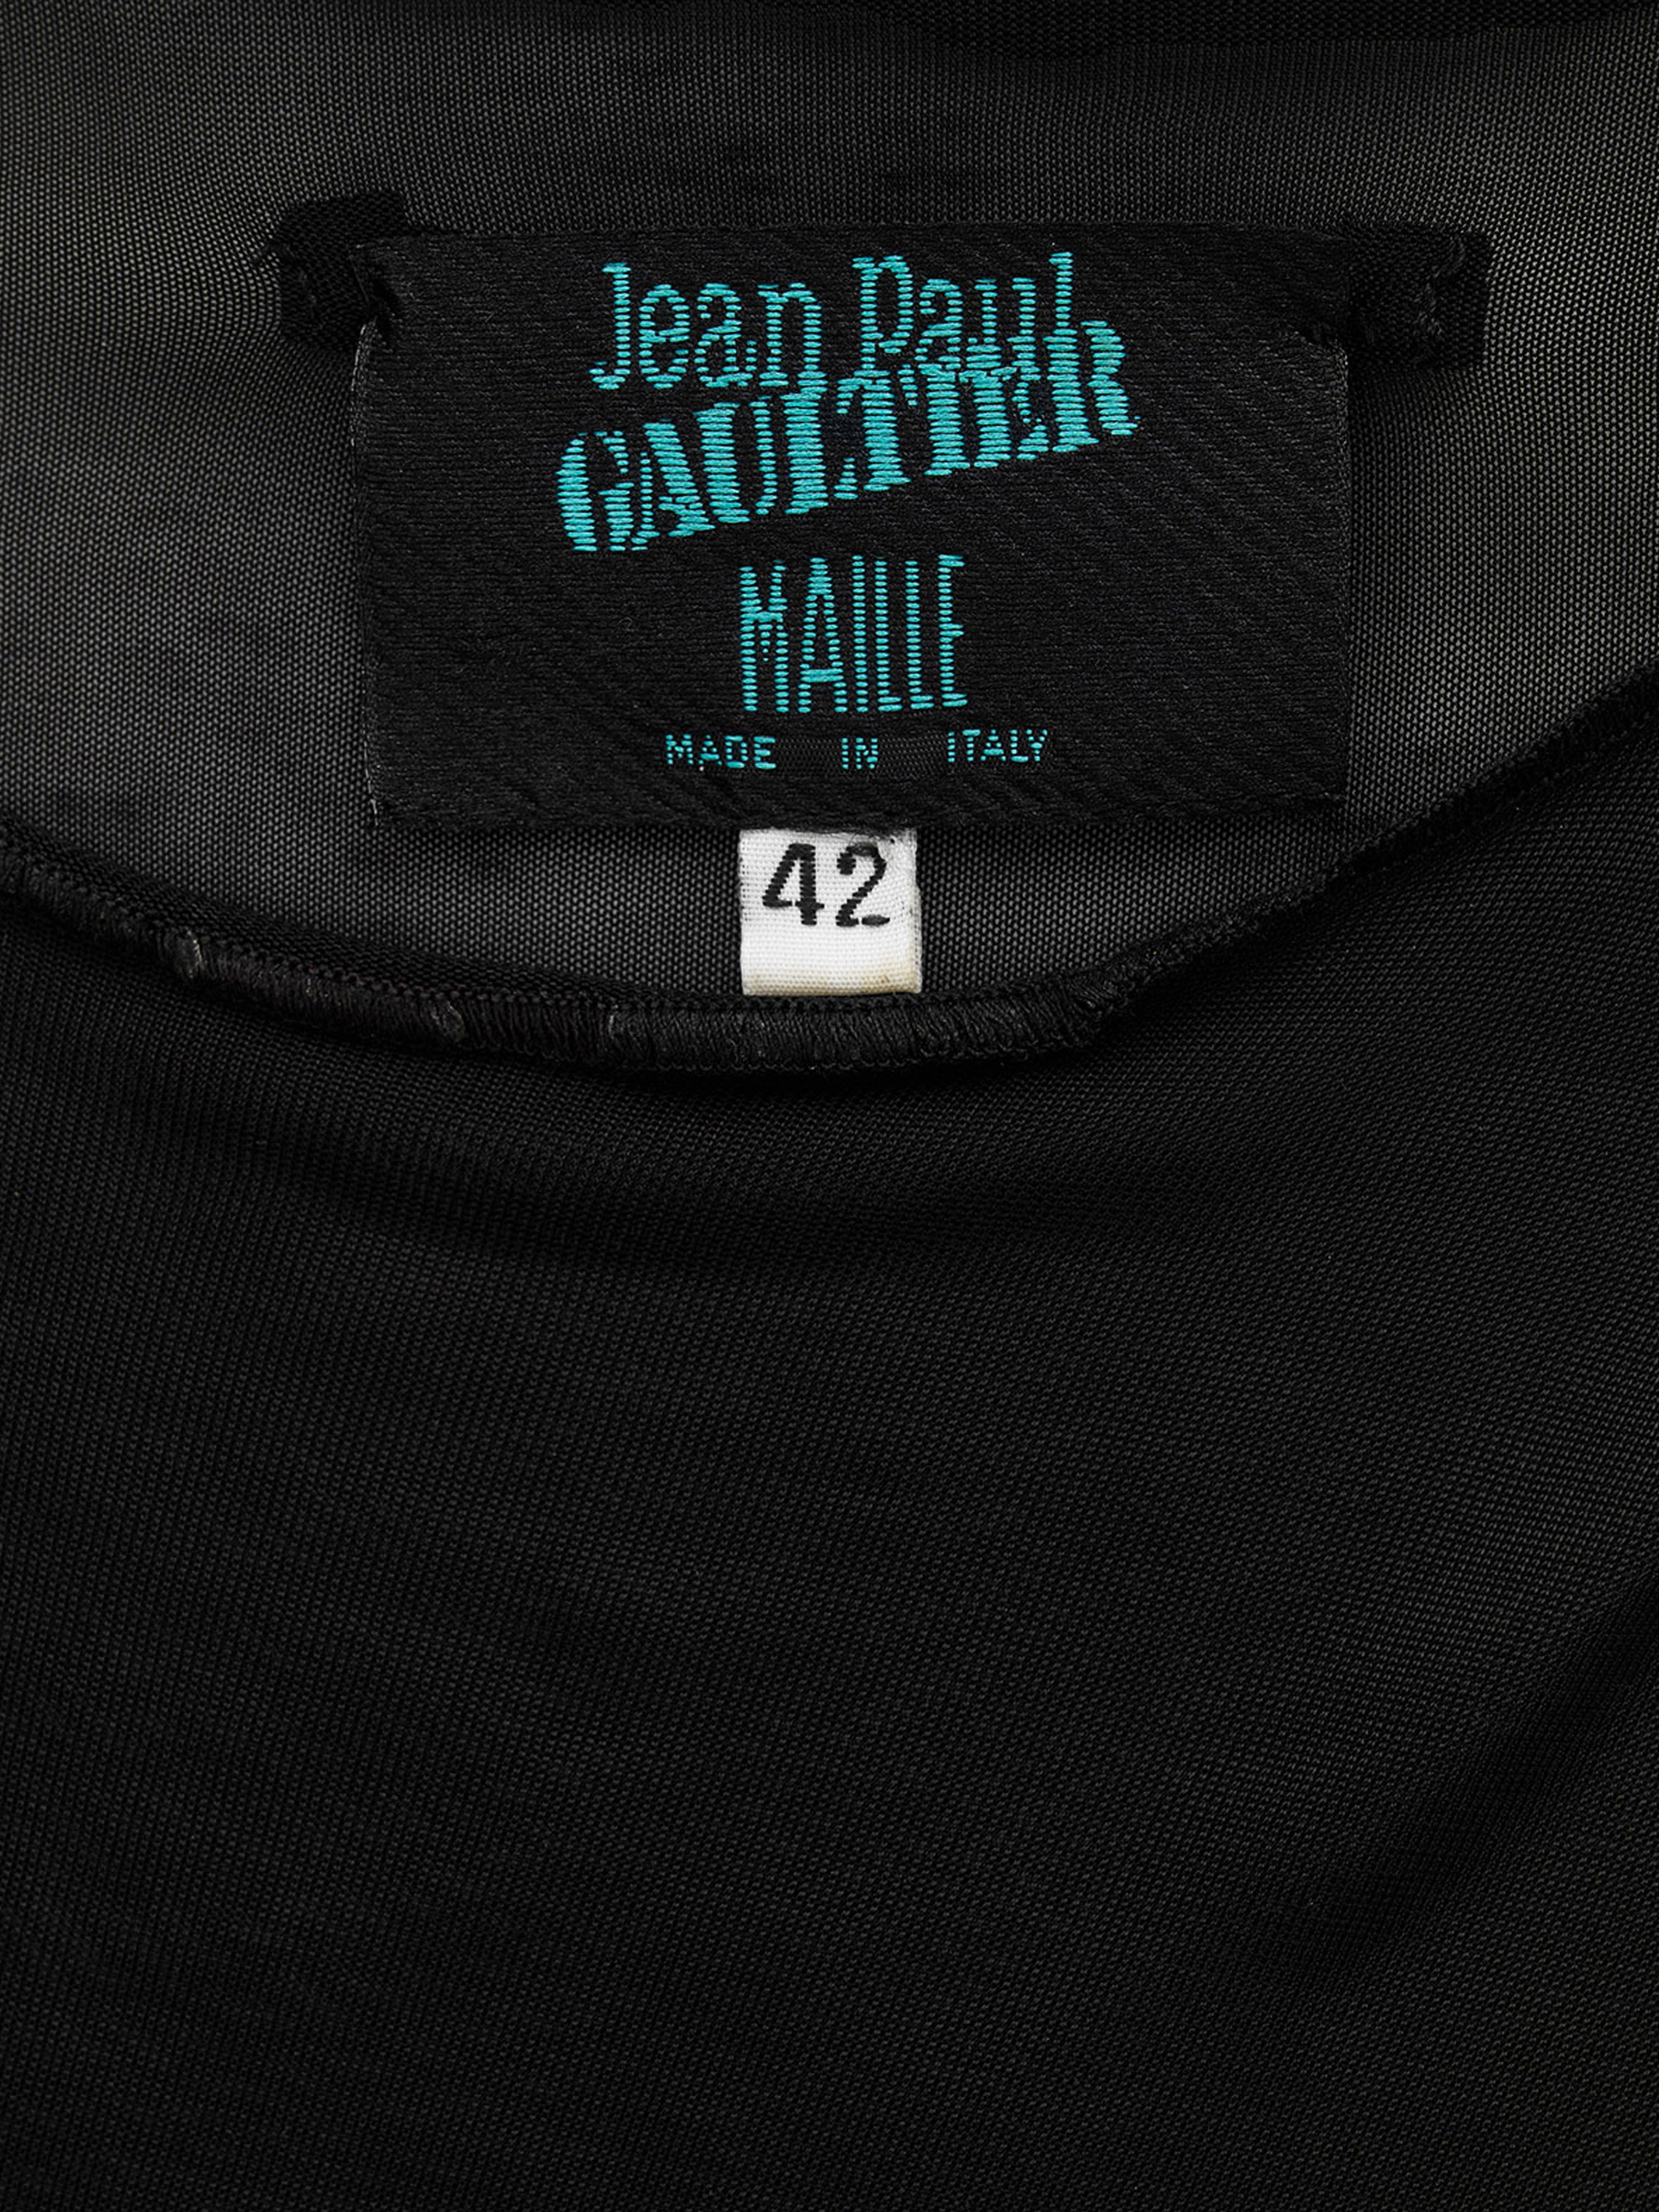 Jean Paul Gaultier SS 1999 Black Mesh Mini Dress